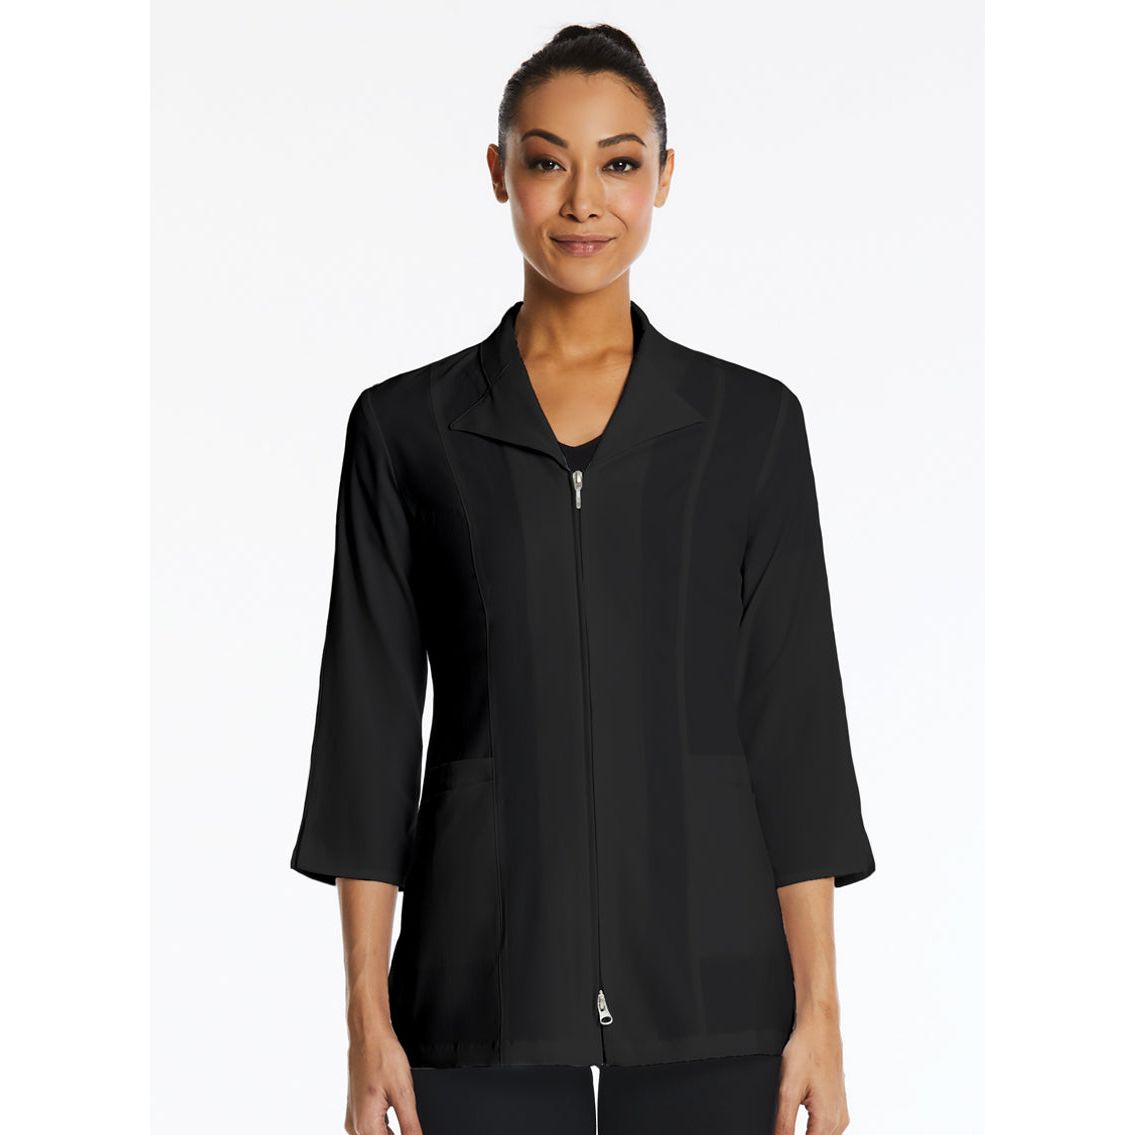 Maevn Smart Women's 3/4 Sleeve Zip Lab Jacket